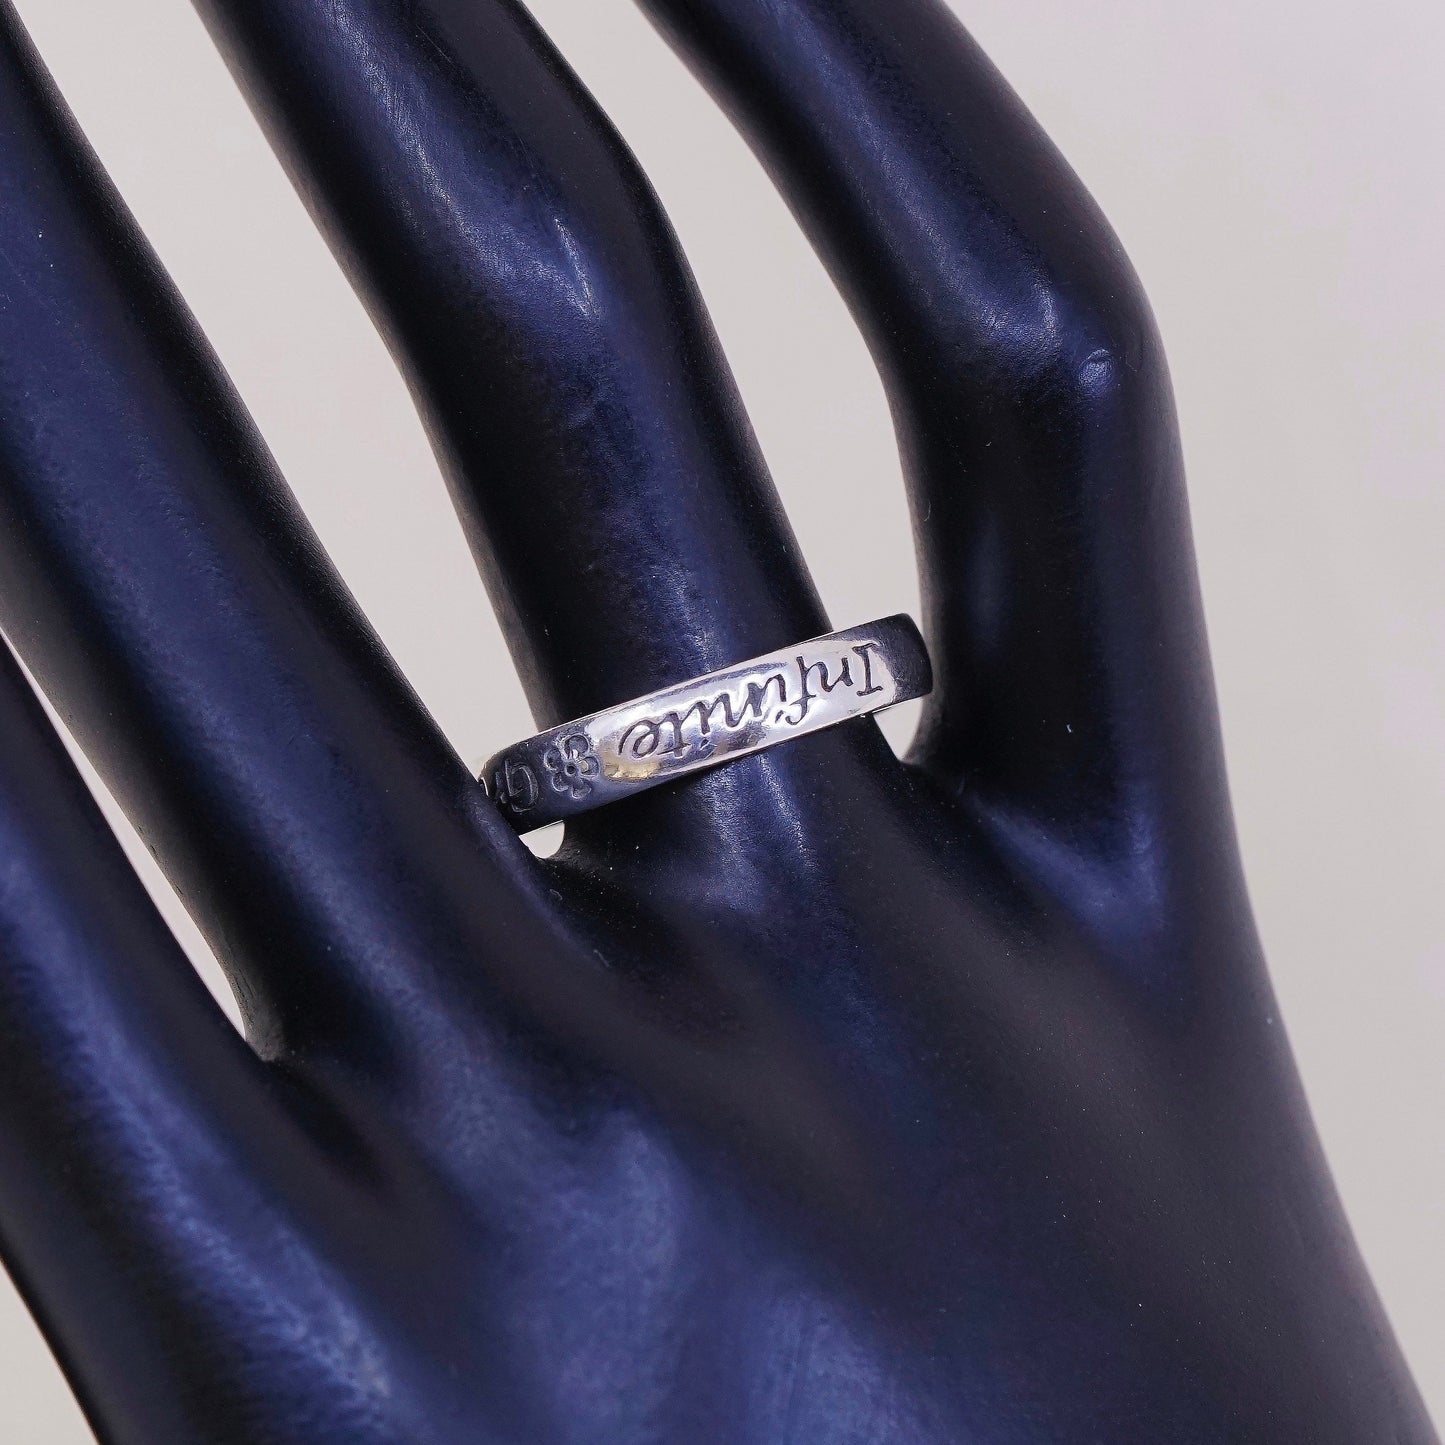 sz 8.25, vtg sterling silver handmade ring, 925 band, engraved “Infinite grace”